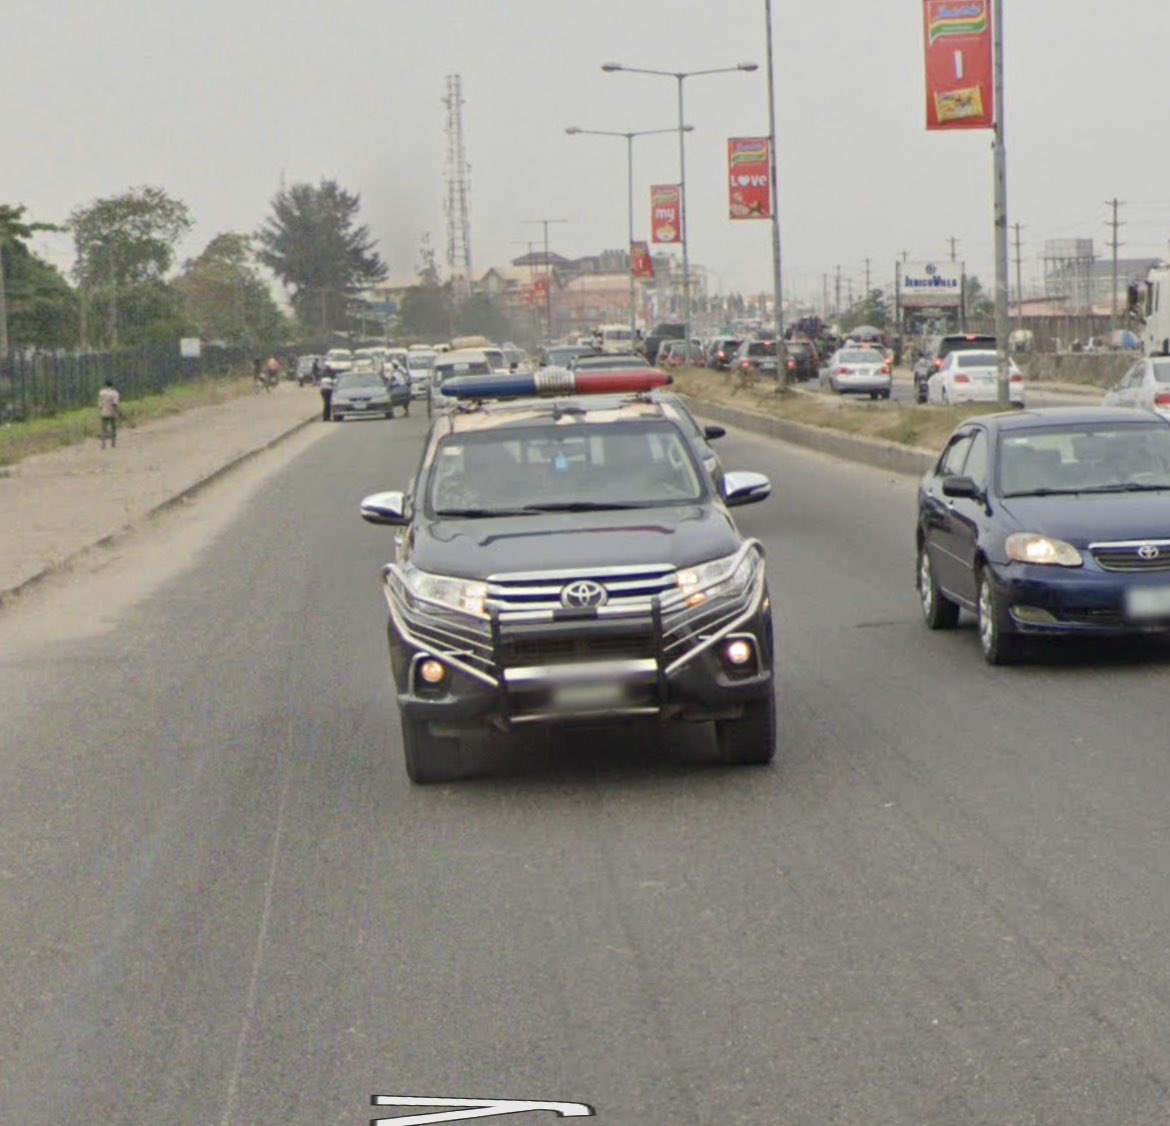 ナイジェリアのフォローカーに乗ってGoogleカー追いかける夢見てしまった…笑 #GeoGuessr